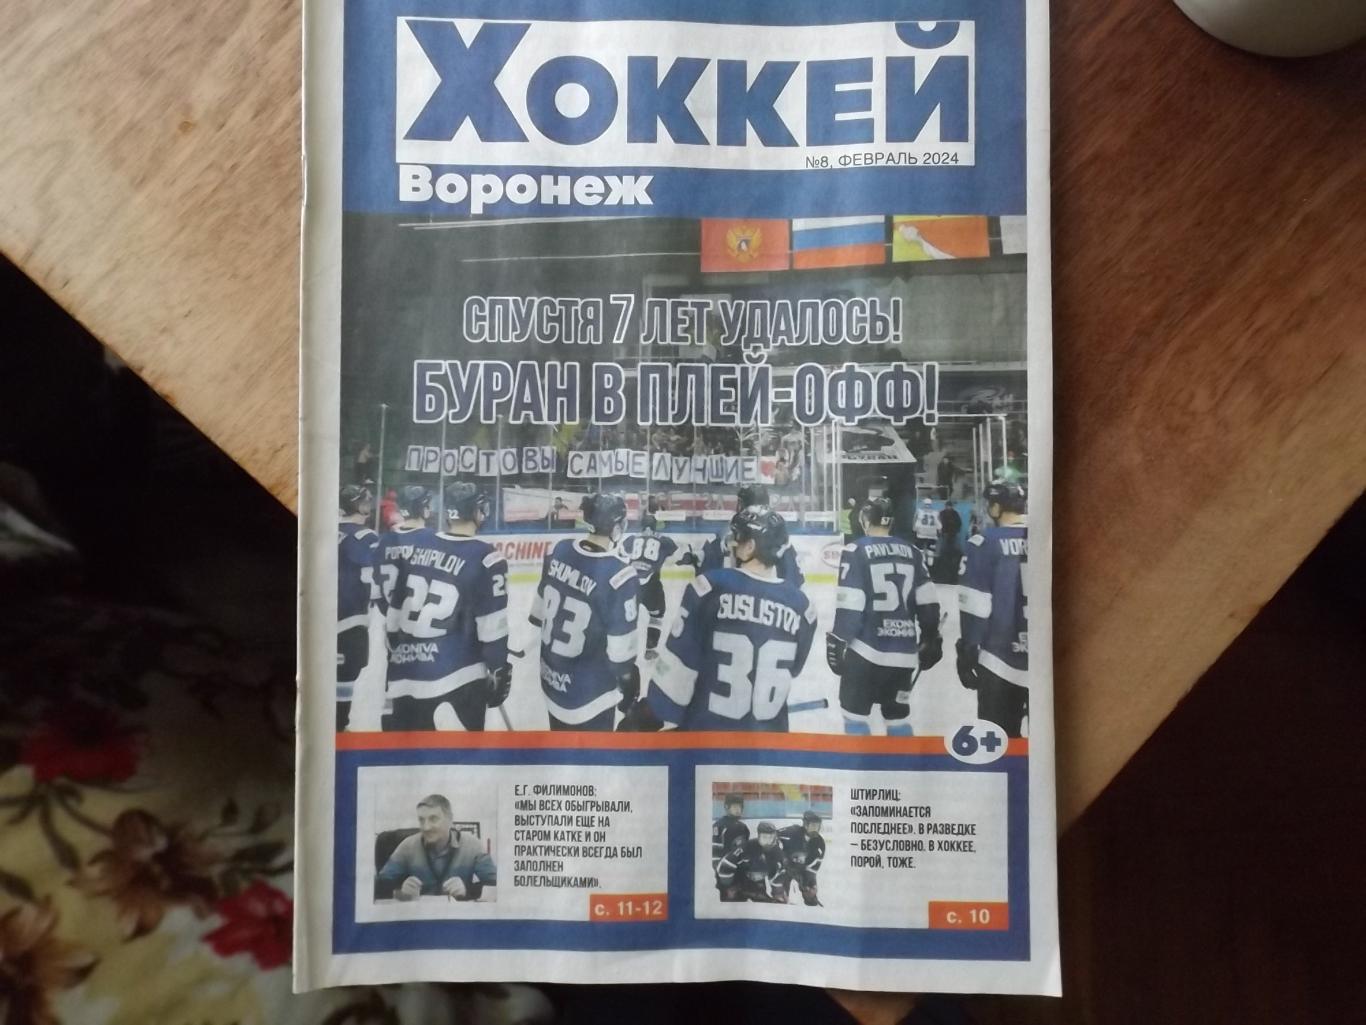 Воронеж-Хоккей №8 февраль 2024 года